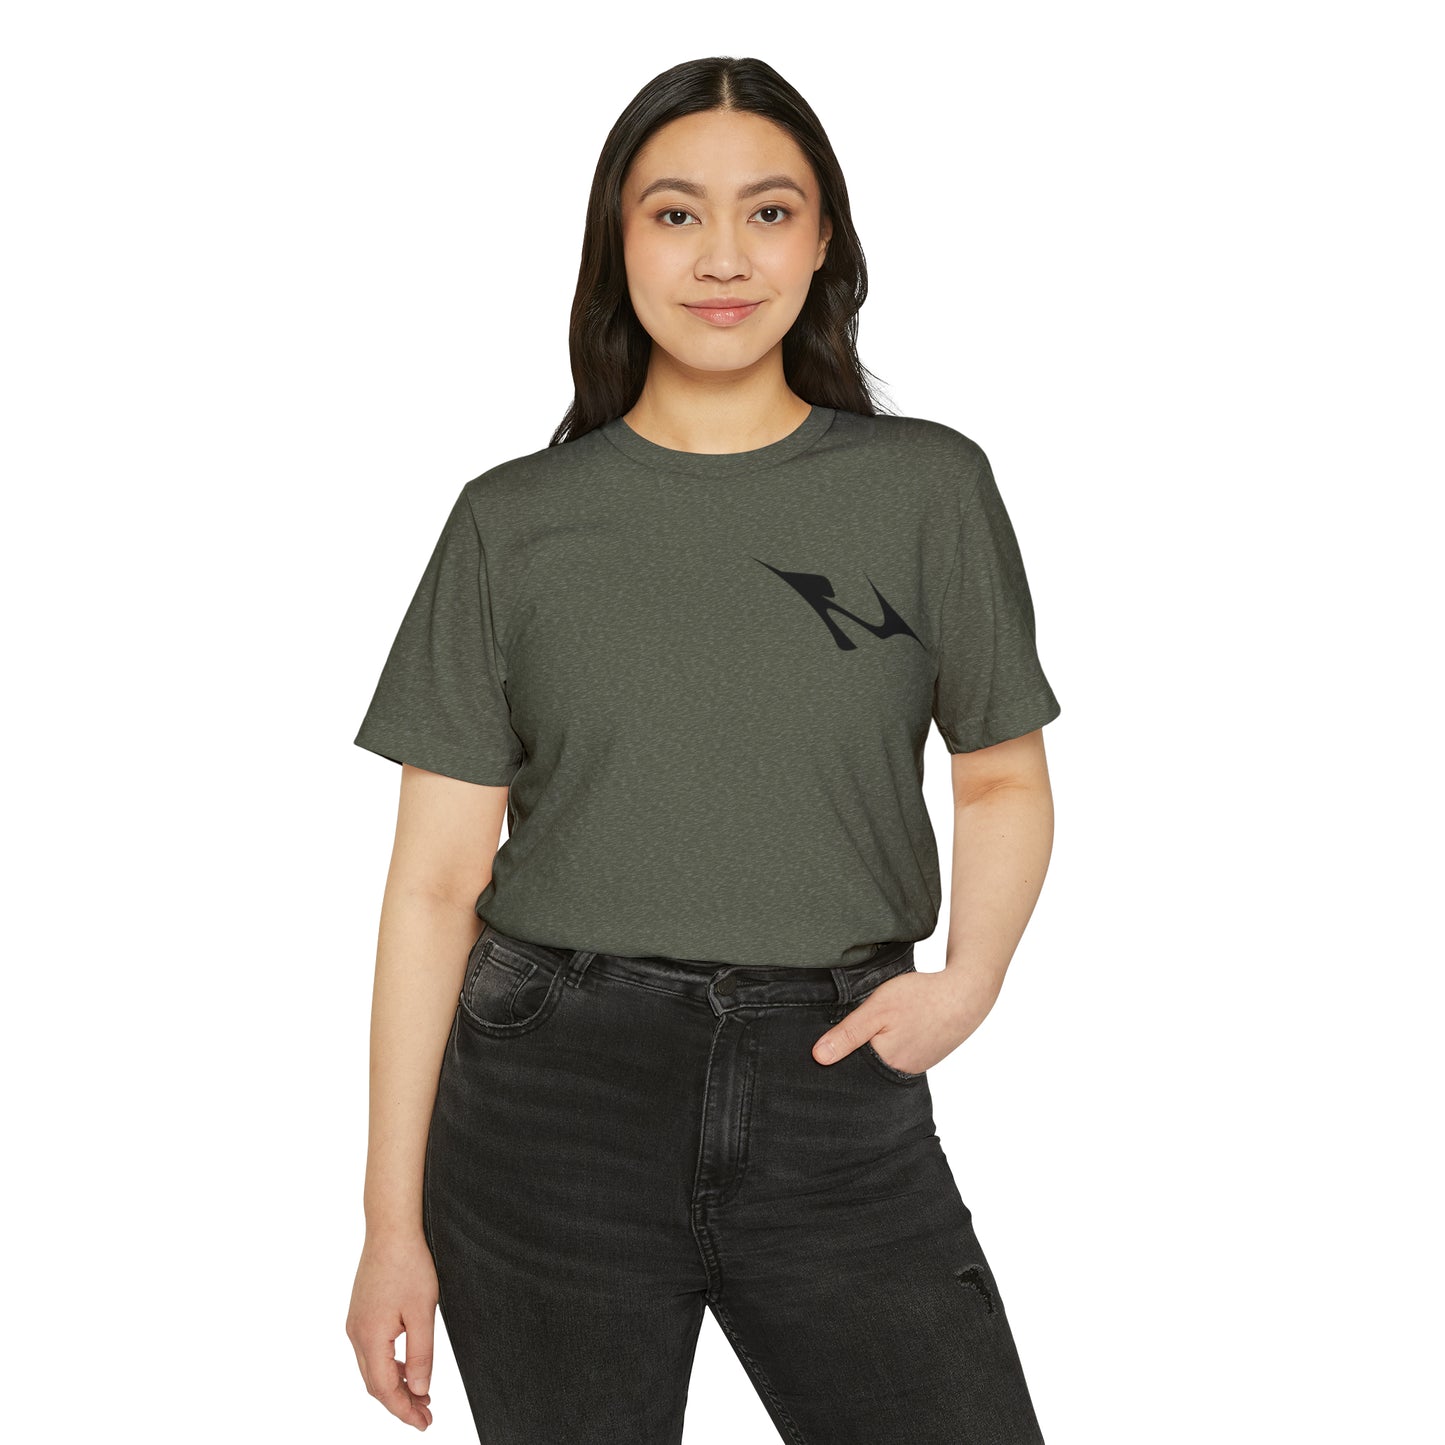 MINIMAL SHAPE 103 - Camiseta ecológica reciclada unisex